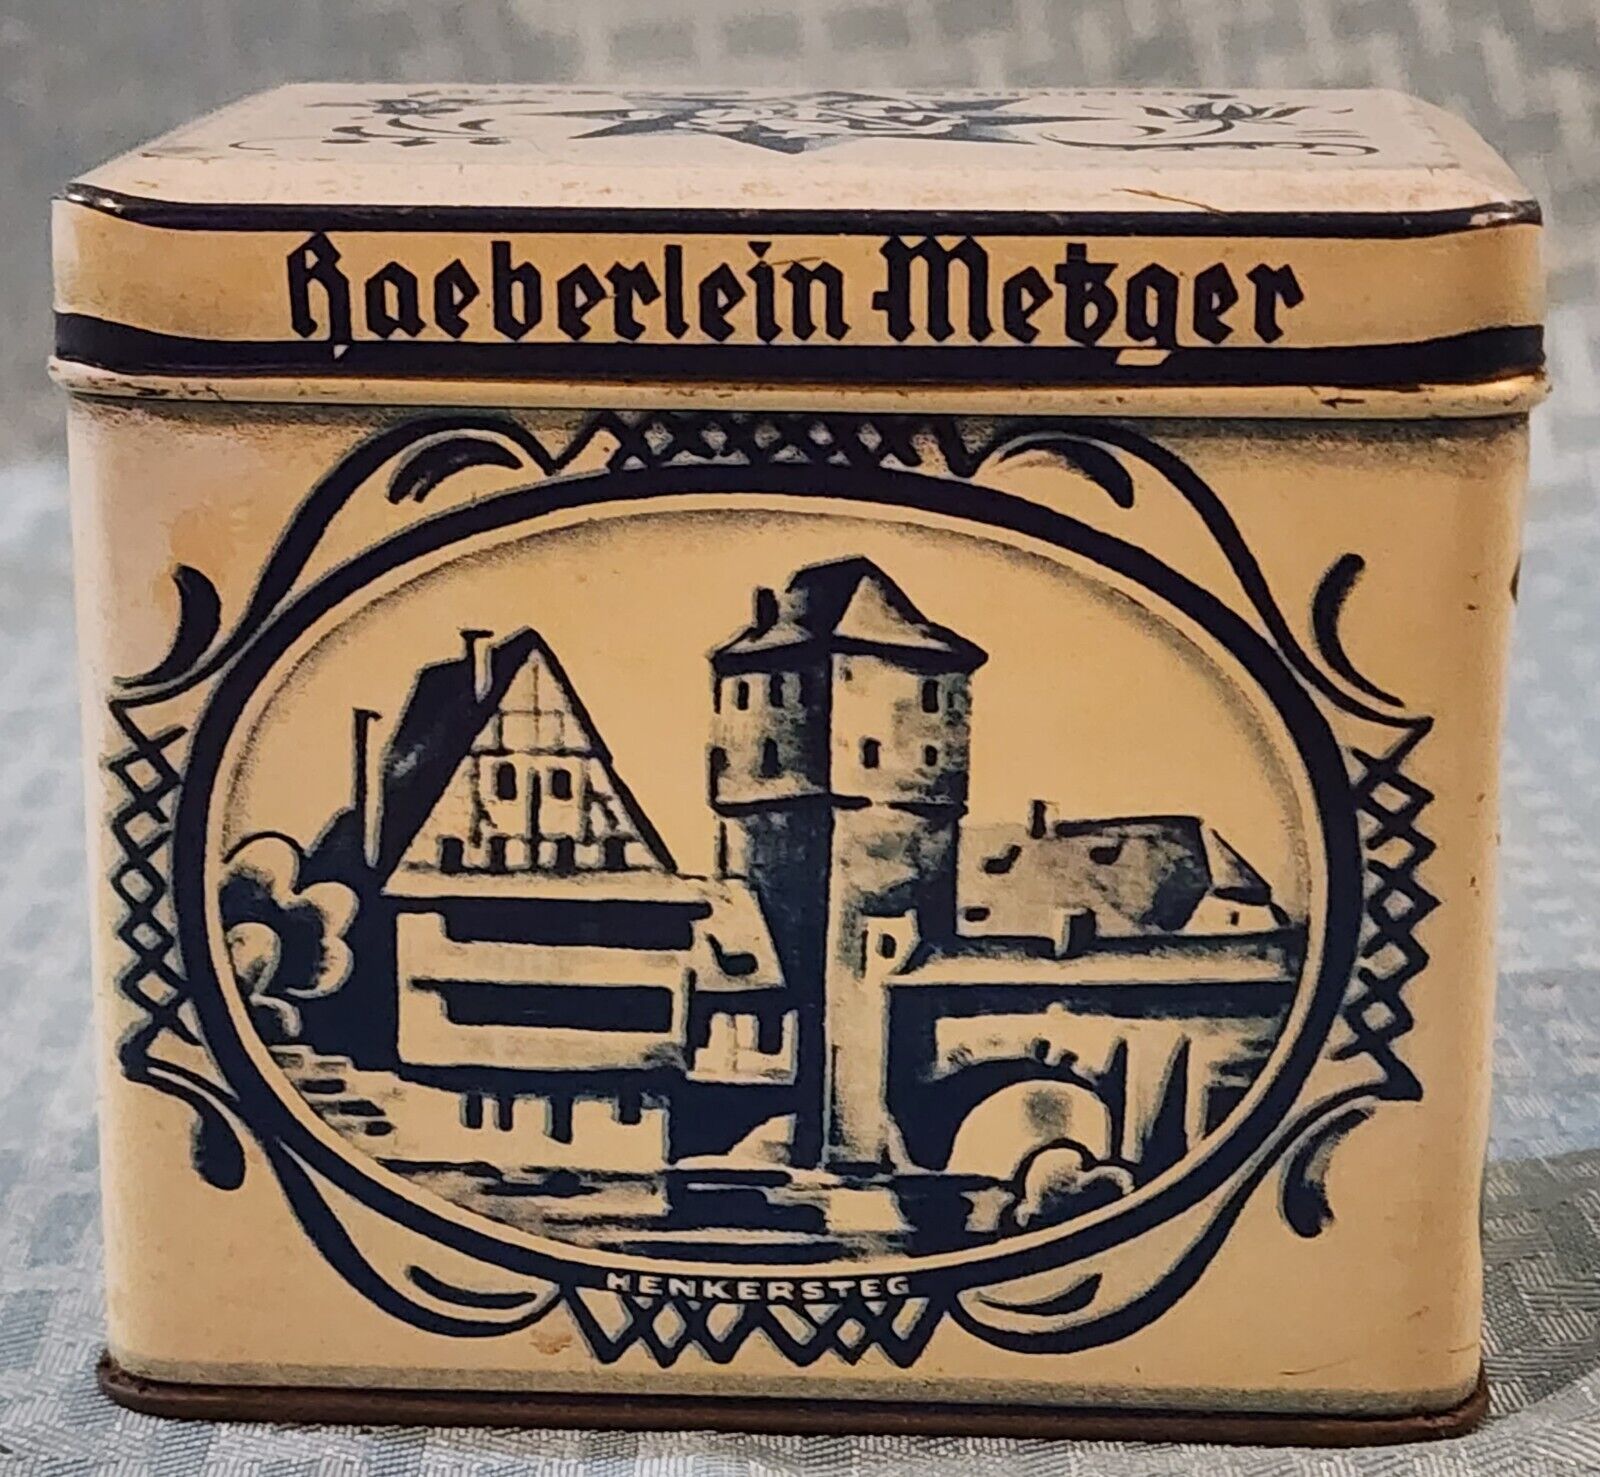 Haeberlein Metzger Nurnberg German Vintage Tin Inhalt: 6 Feinste Elisenlebkuchen